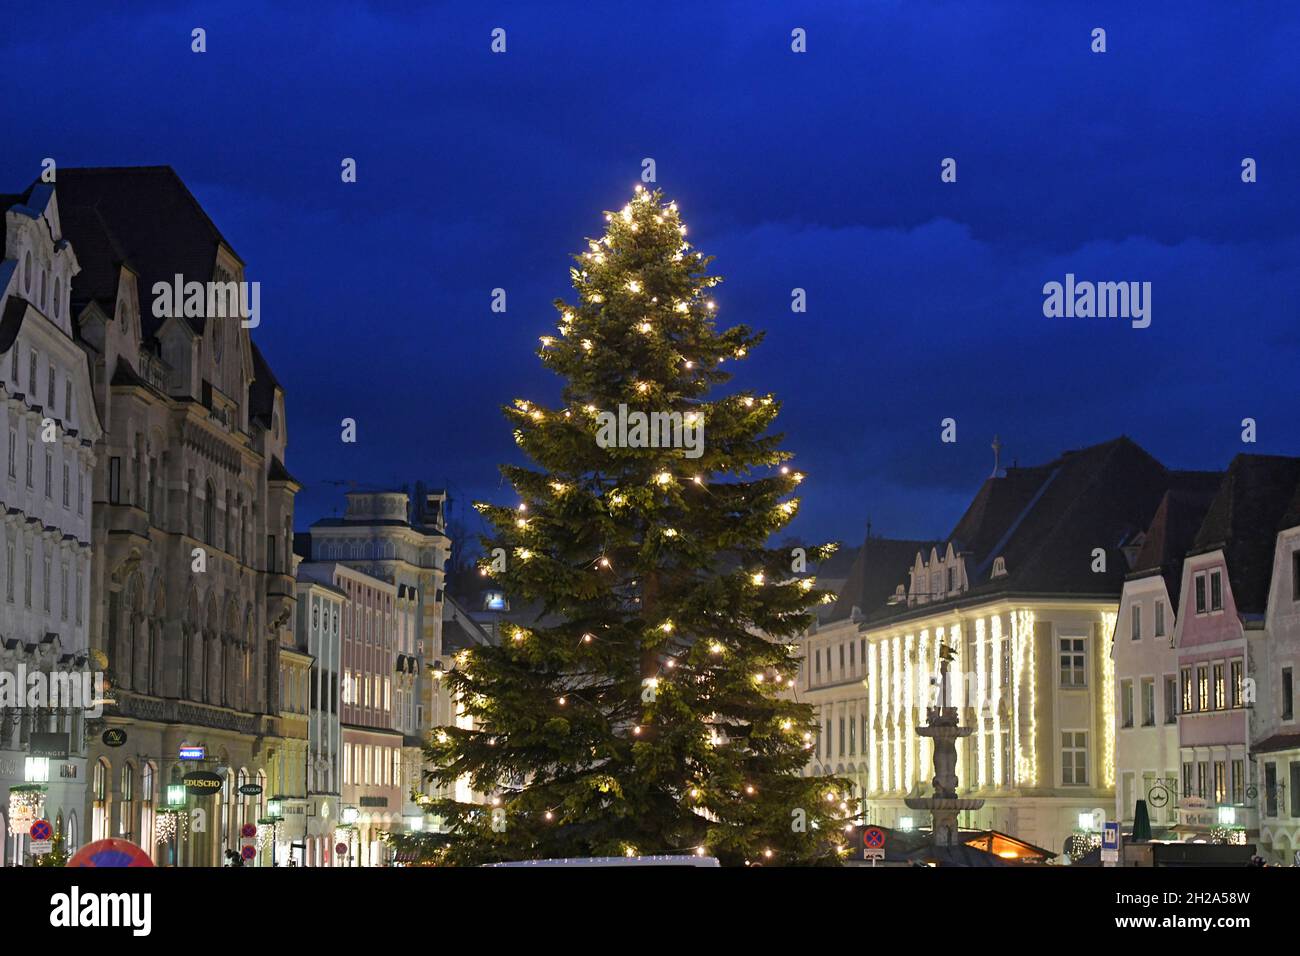 Auf dem historischen Stadtplatz von Steyr (Oberösterreich) wird jedes Jahr im Advent ein schöner, beleuchteter Weihnachtsbaum aufgestellt. - On the hi Stock Photo